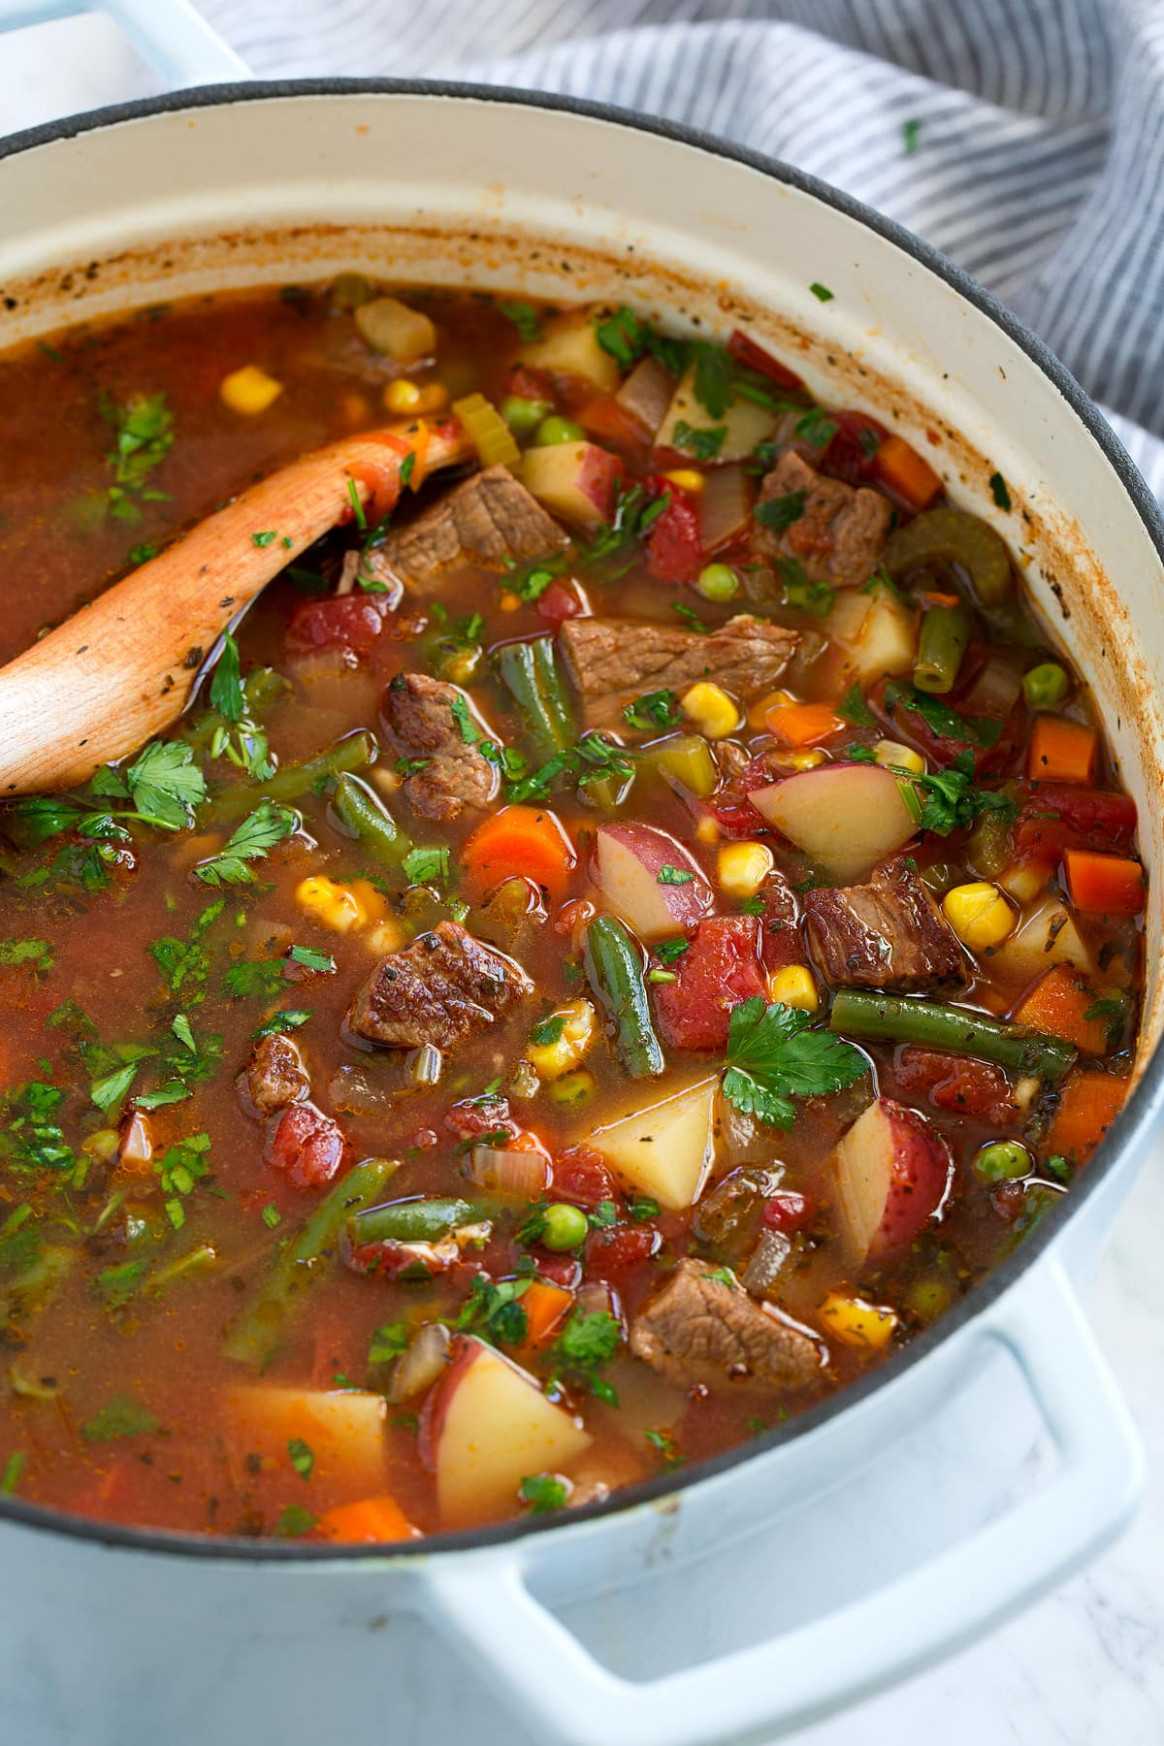 Рецепты супов на каждый день (с фото) - простые и вкусные